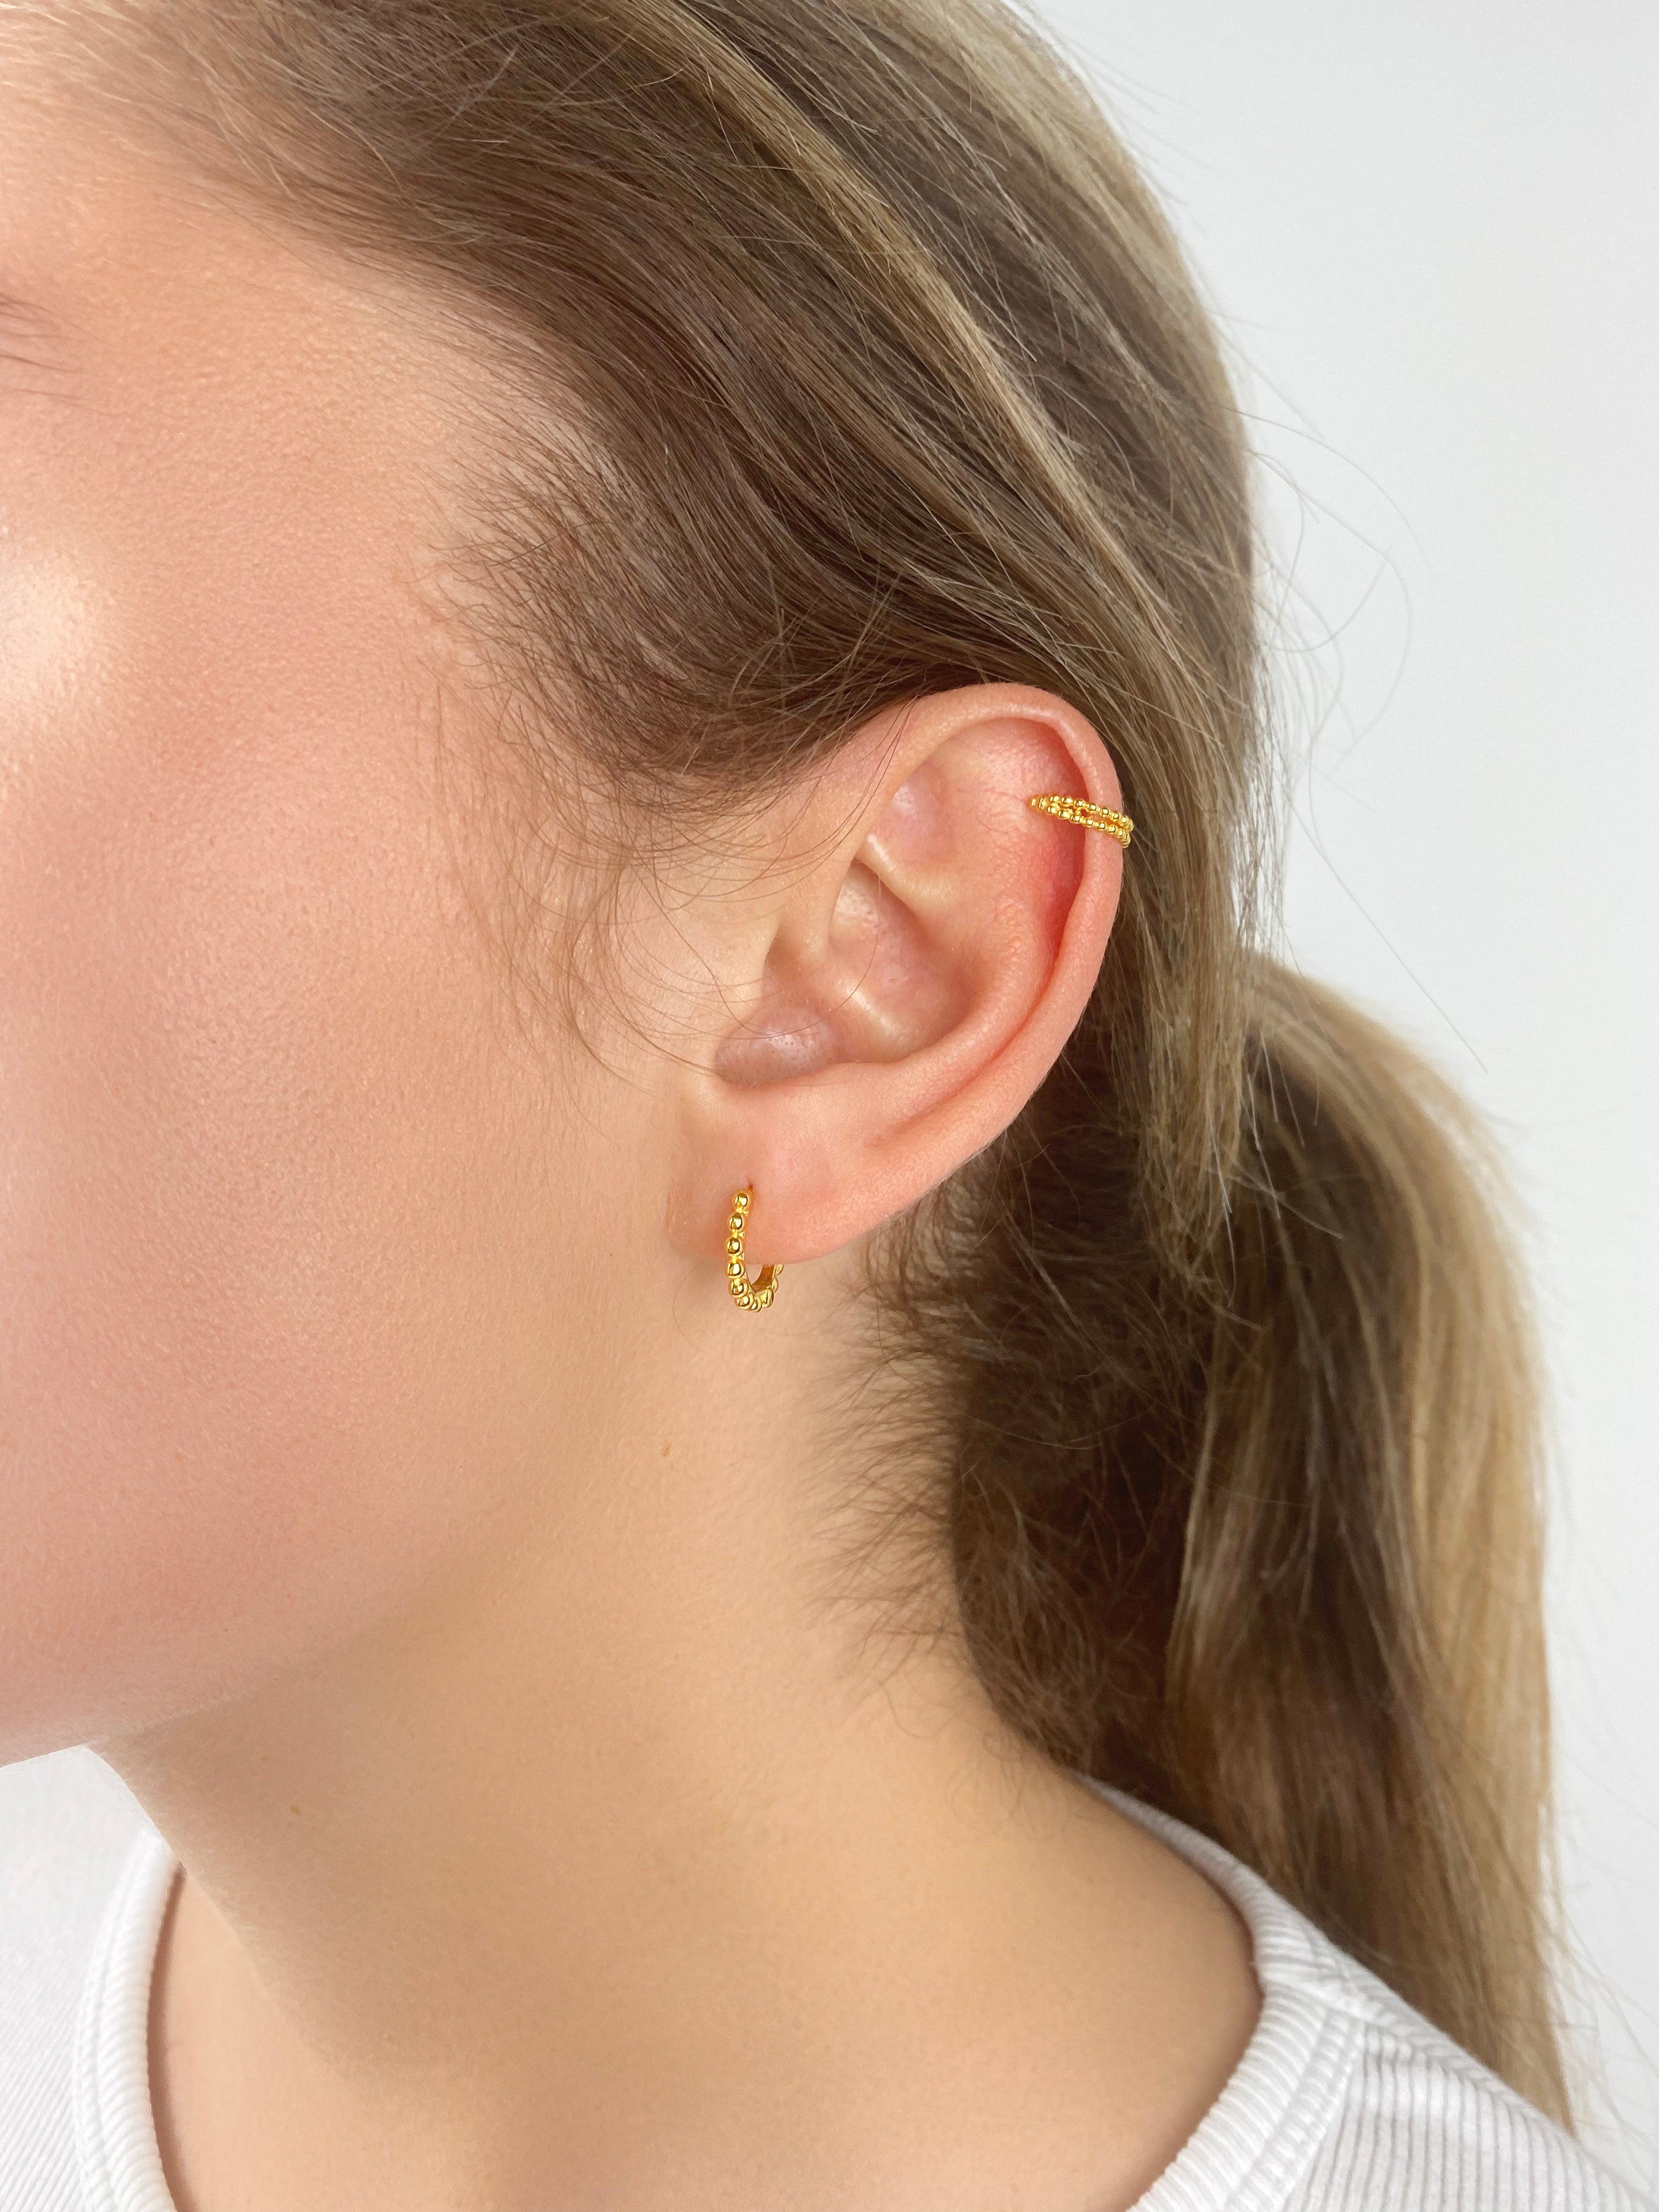 Lana Earrings in Gold